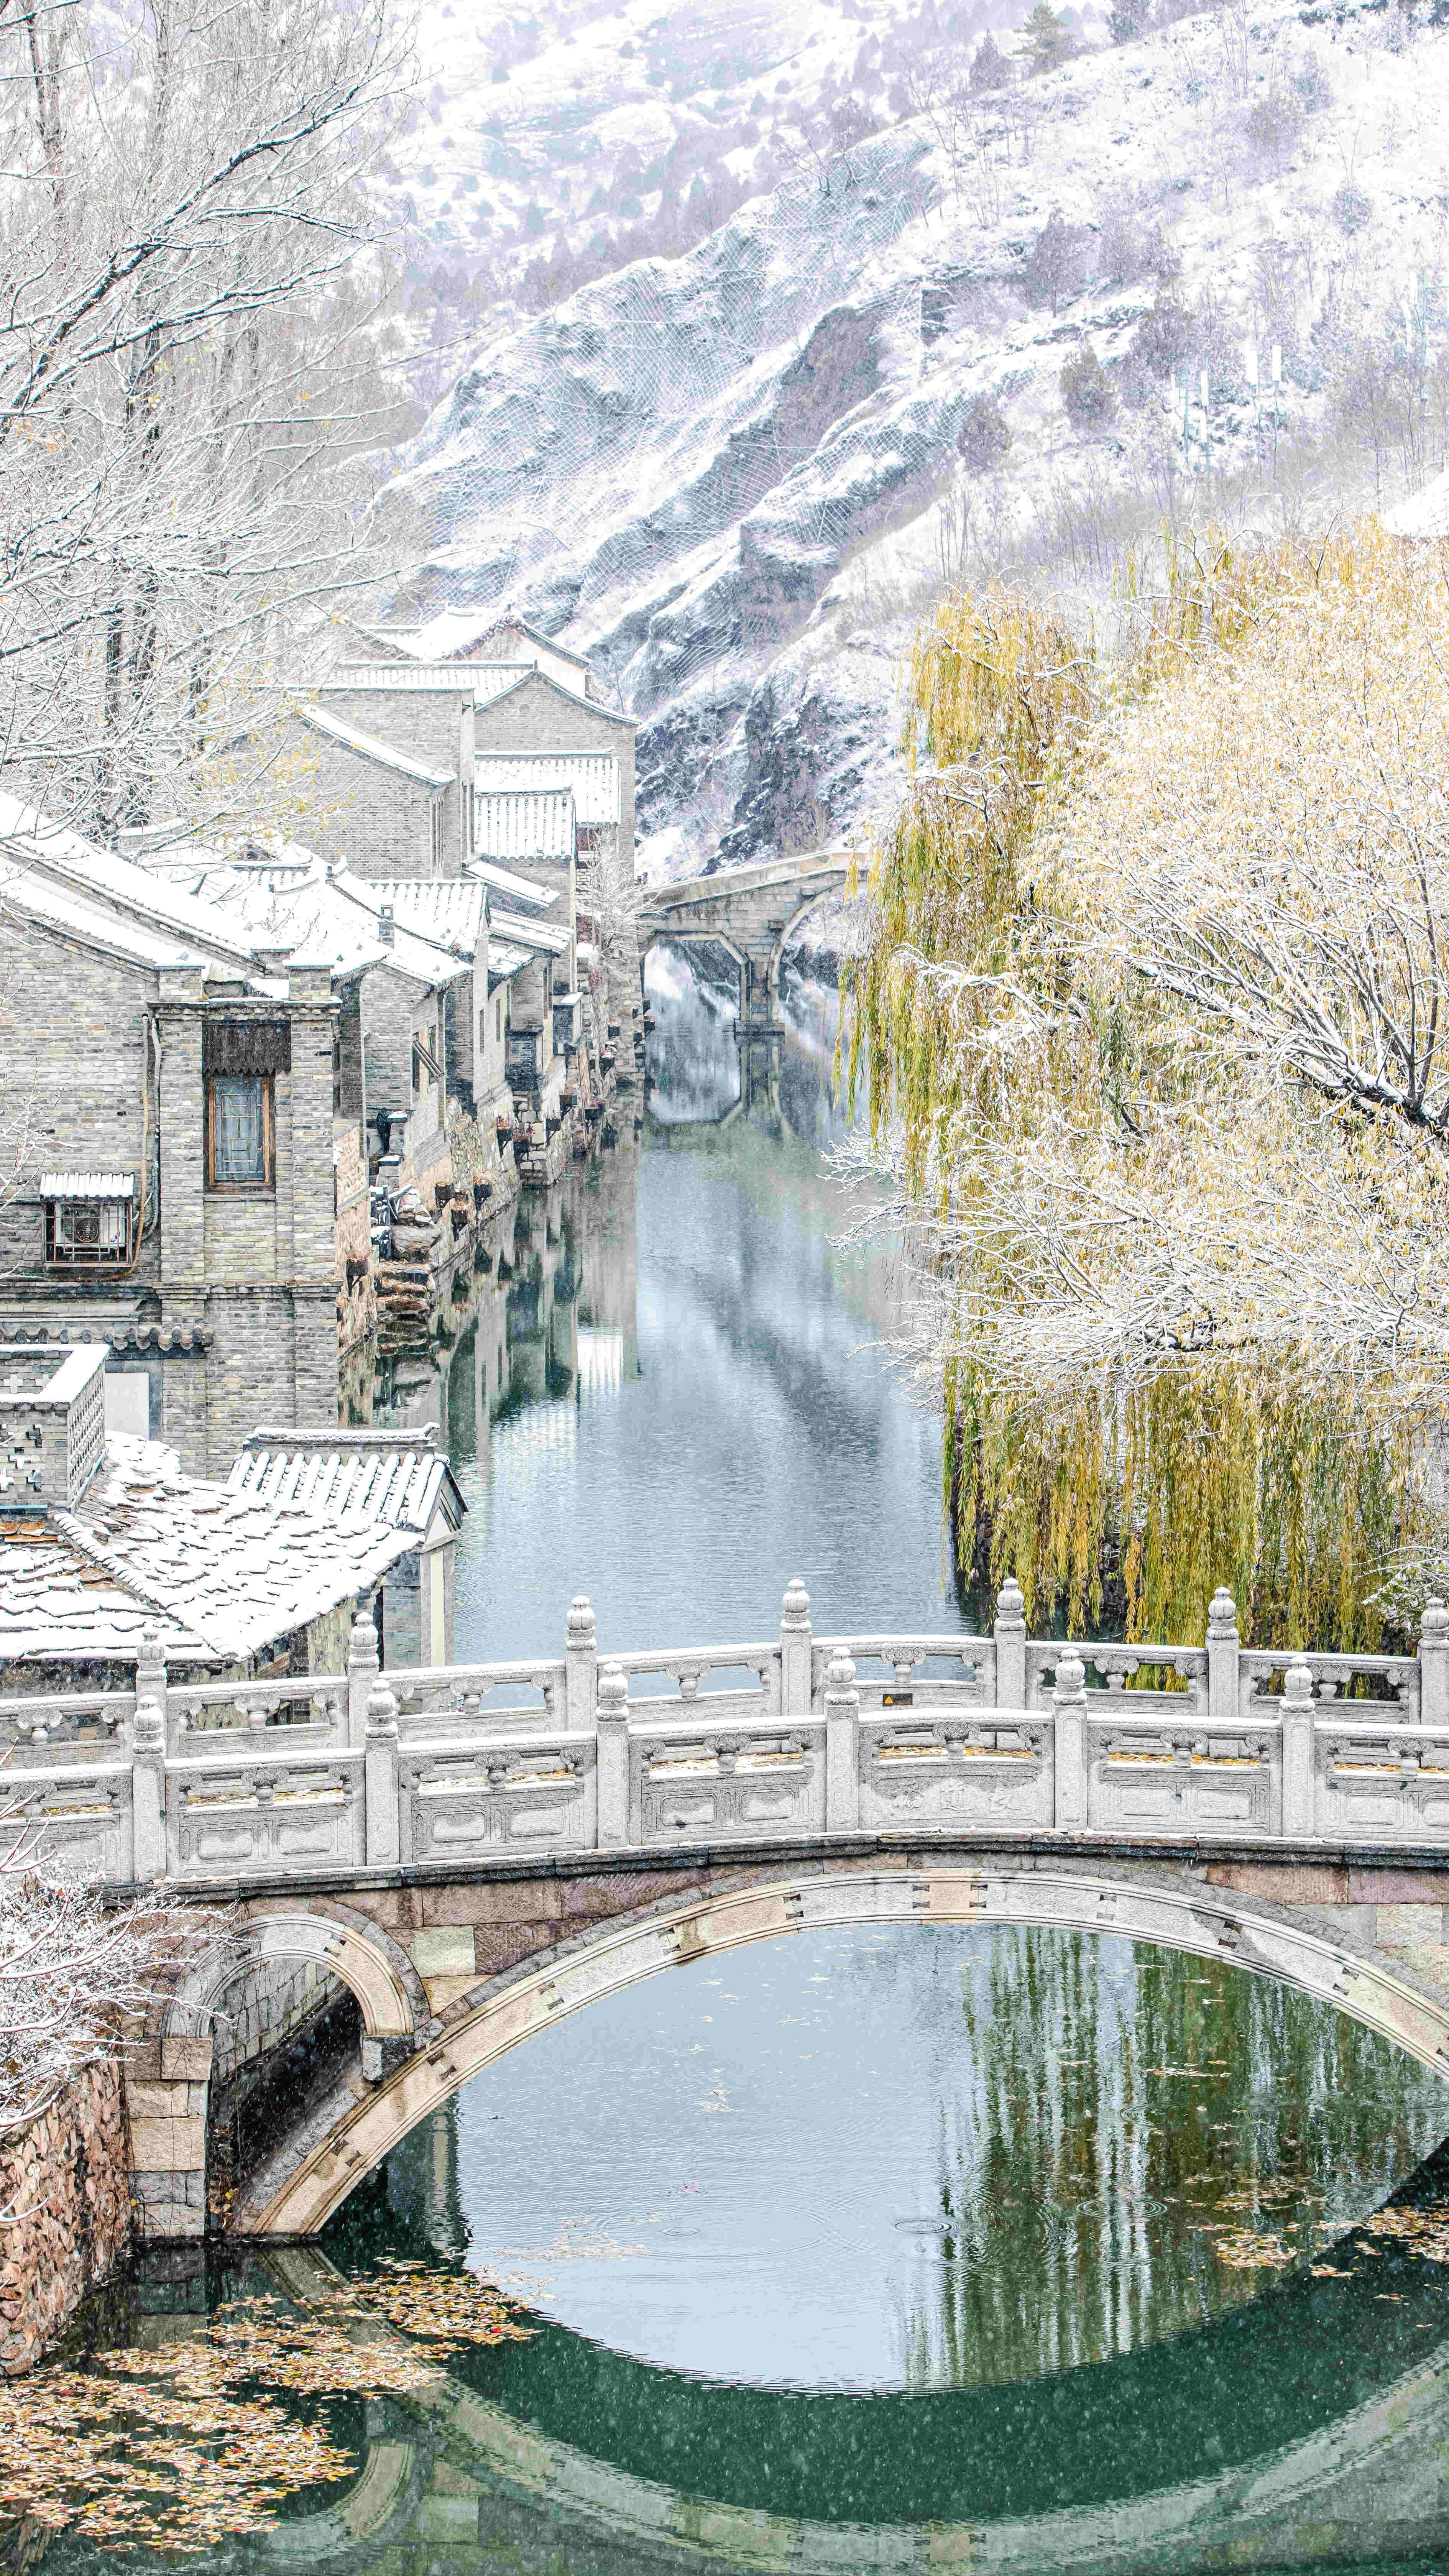 北京密云:古北水镇遇初雪,北方冬日美景尽现